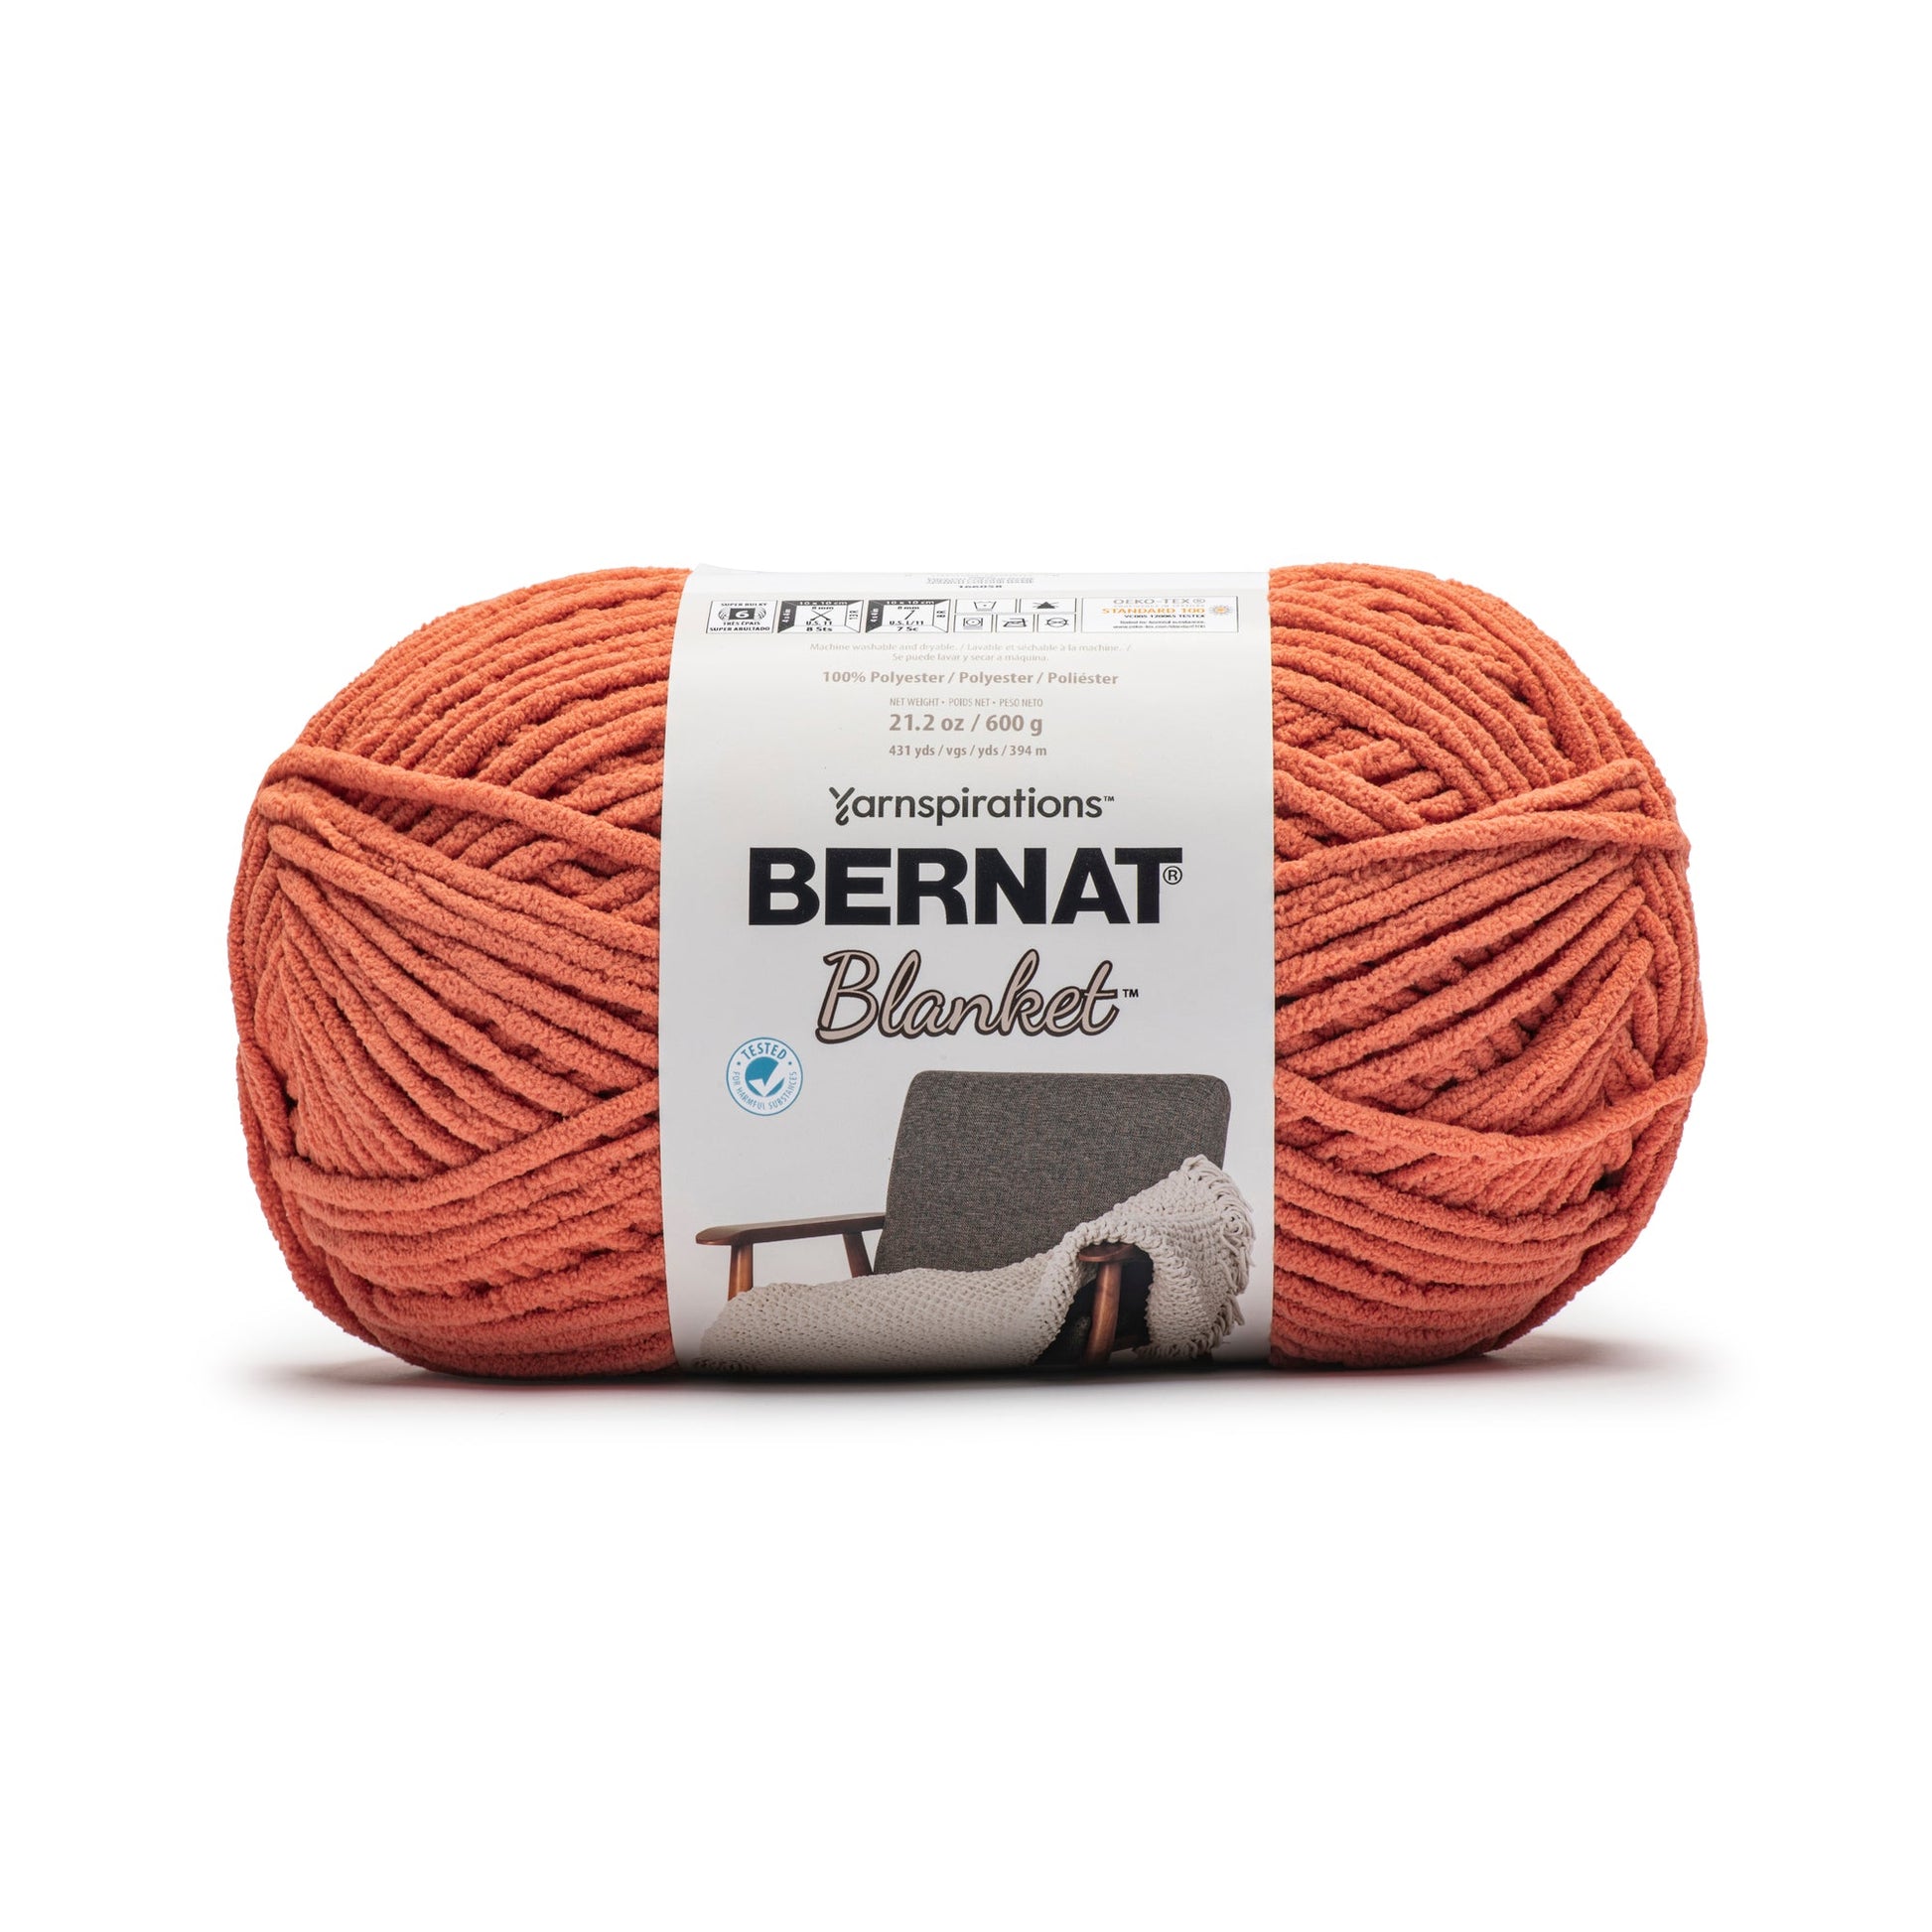 Bernat Blanket Yarn (600g/21.2oz) - Discontinued shades